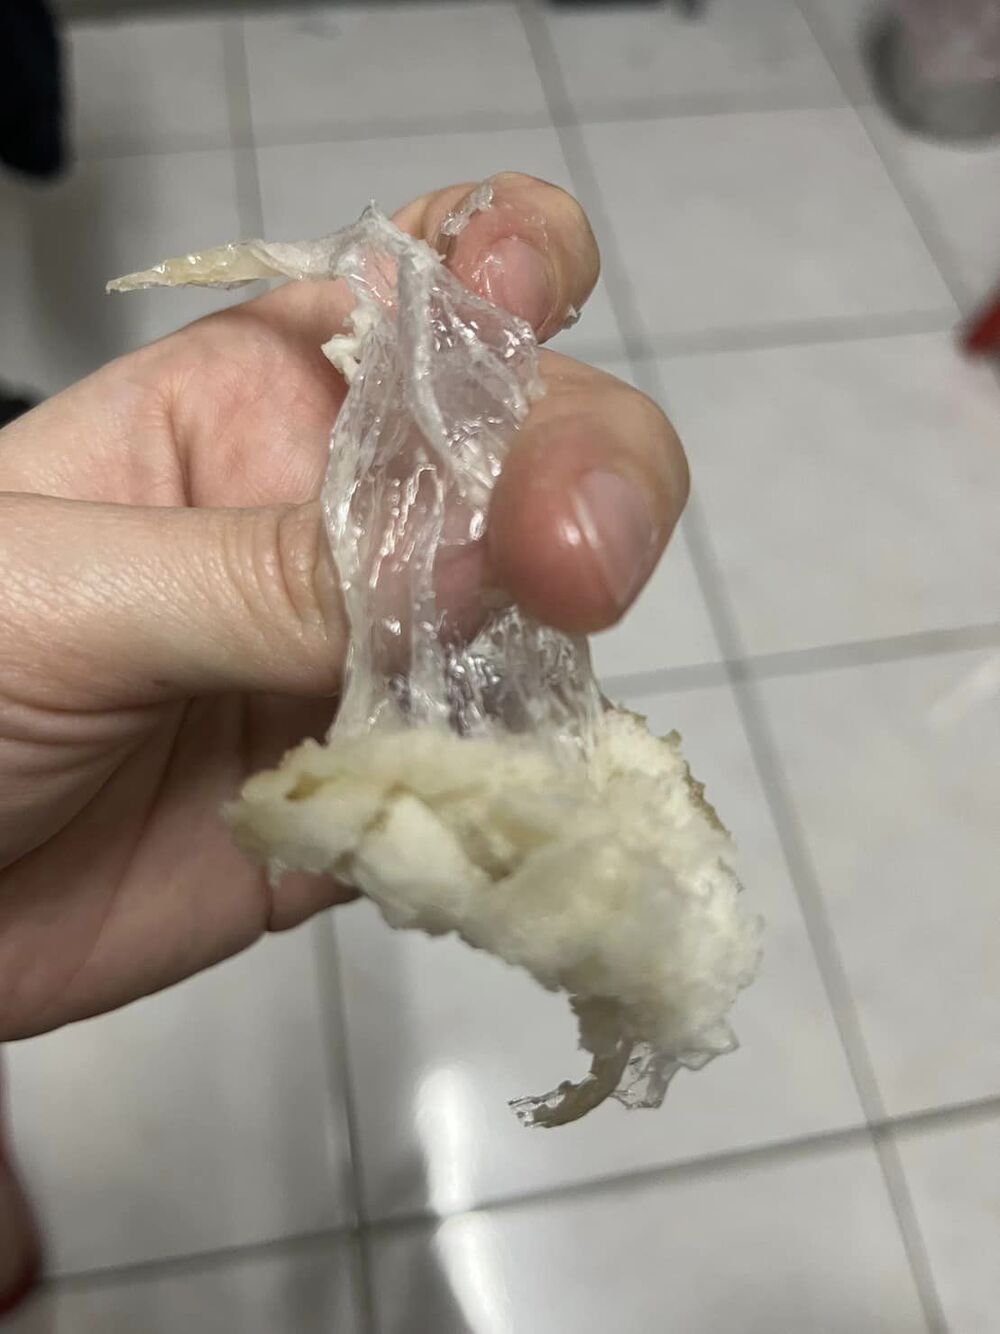 原PO從麵糰中拉出14公分塑膠膜。圖截自臉書爆料公社